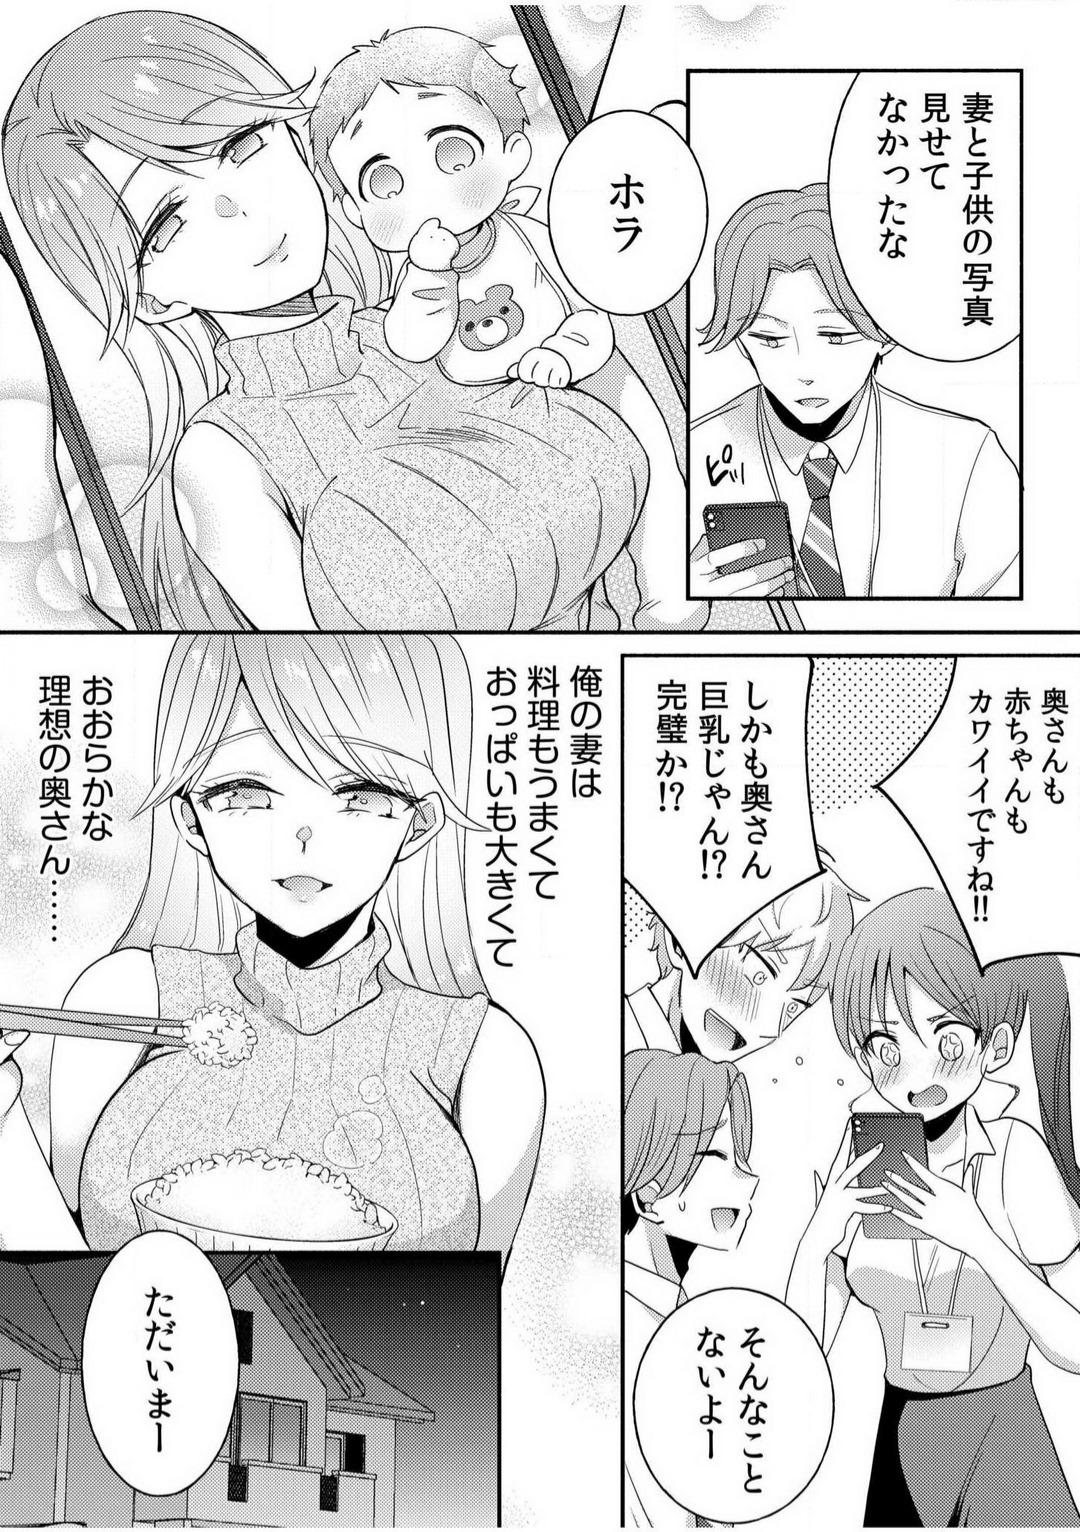 Parties [niko] Darashina Tsuma to Yoshi Yoshi Etchi! Kimochīi kara Oku ni Chodaii! [R18] 1-6 Ride - Page 3